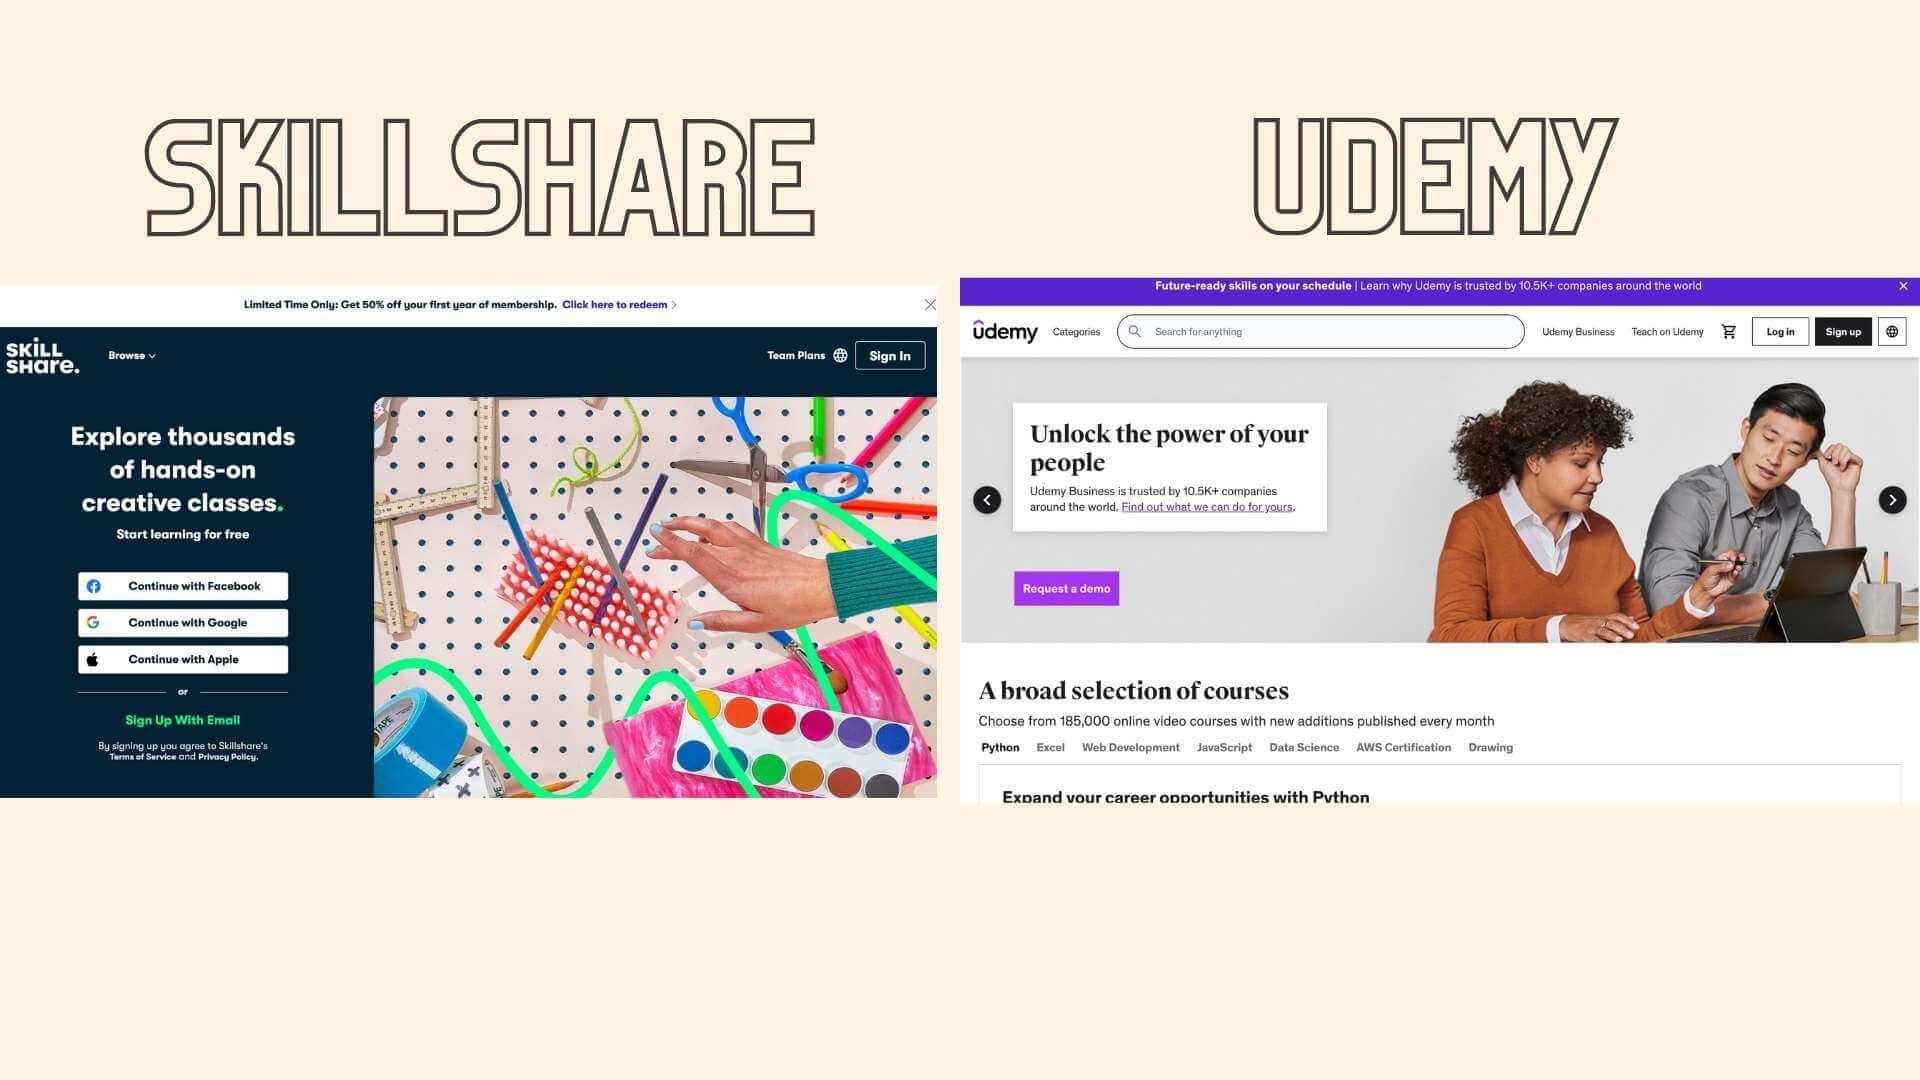 image showing skillshare next to udemy marketplace